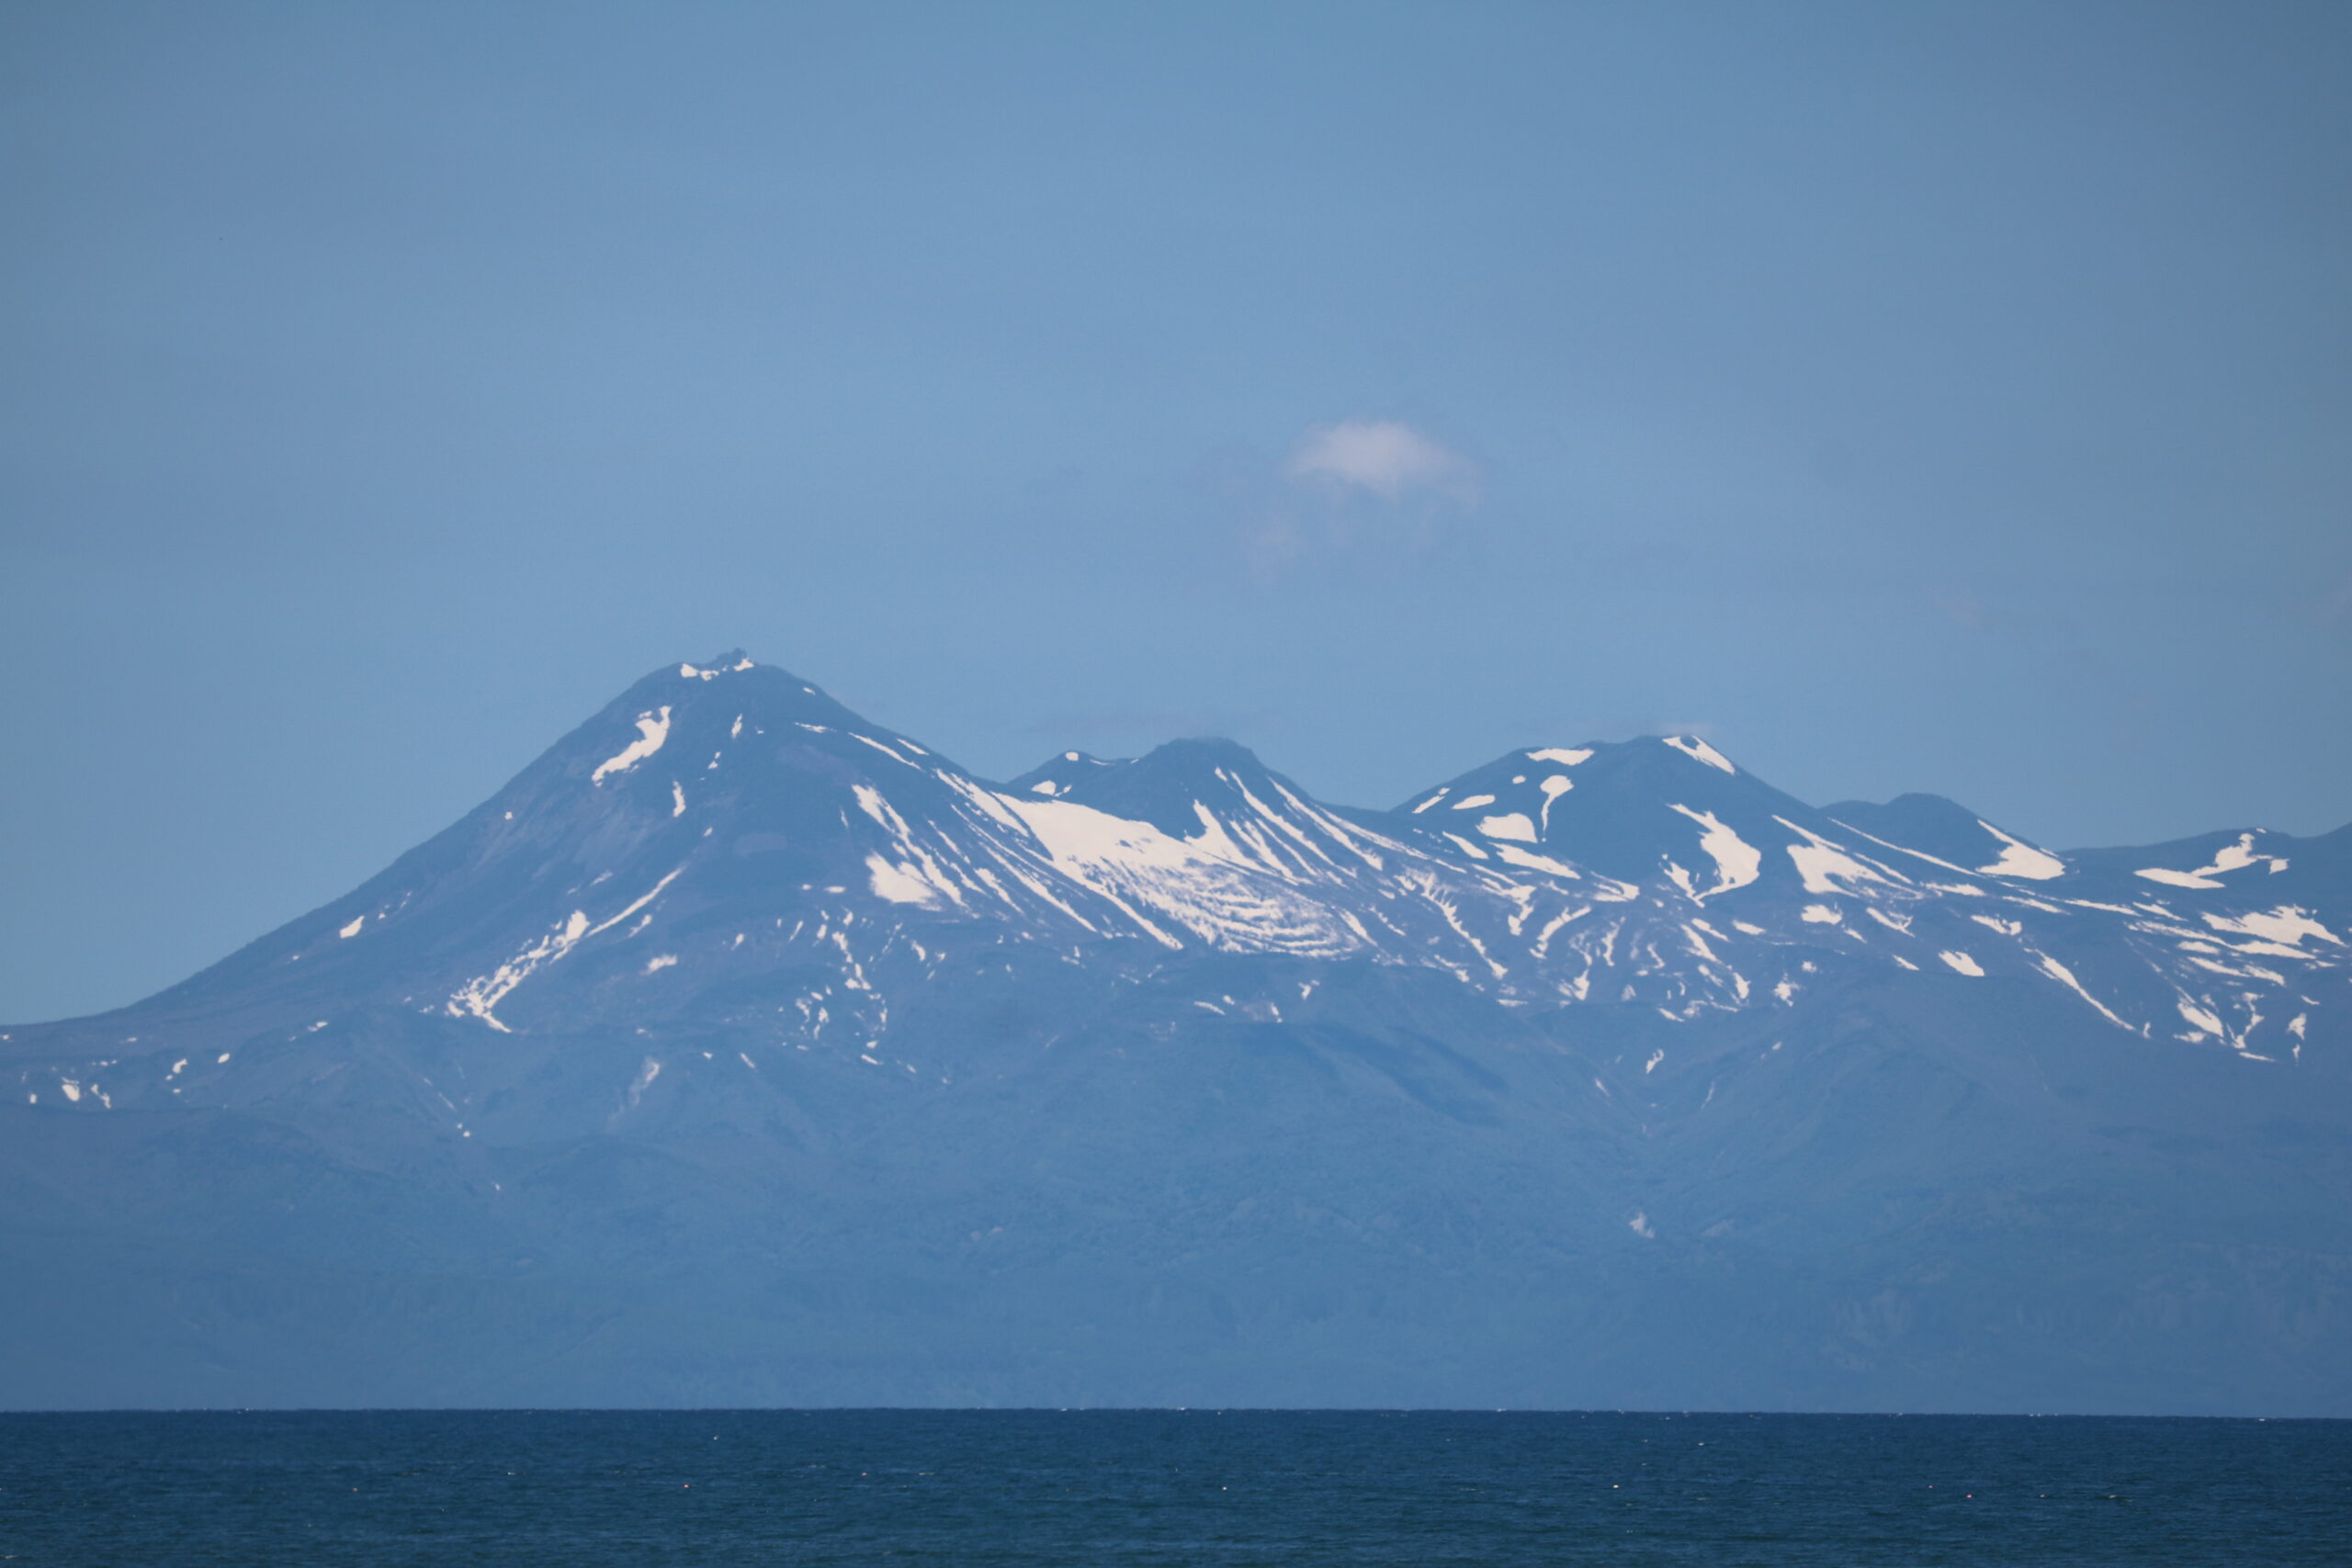 Berge der Shiretoko-Halbinsel: - selbst im Juni liegt noch sichtbar viel Schnee